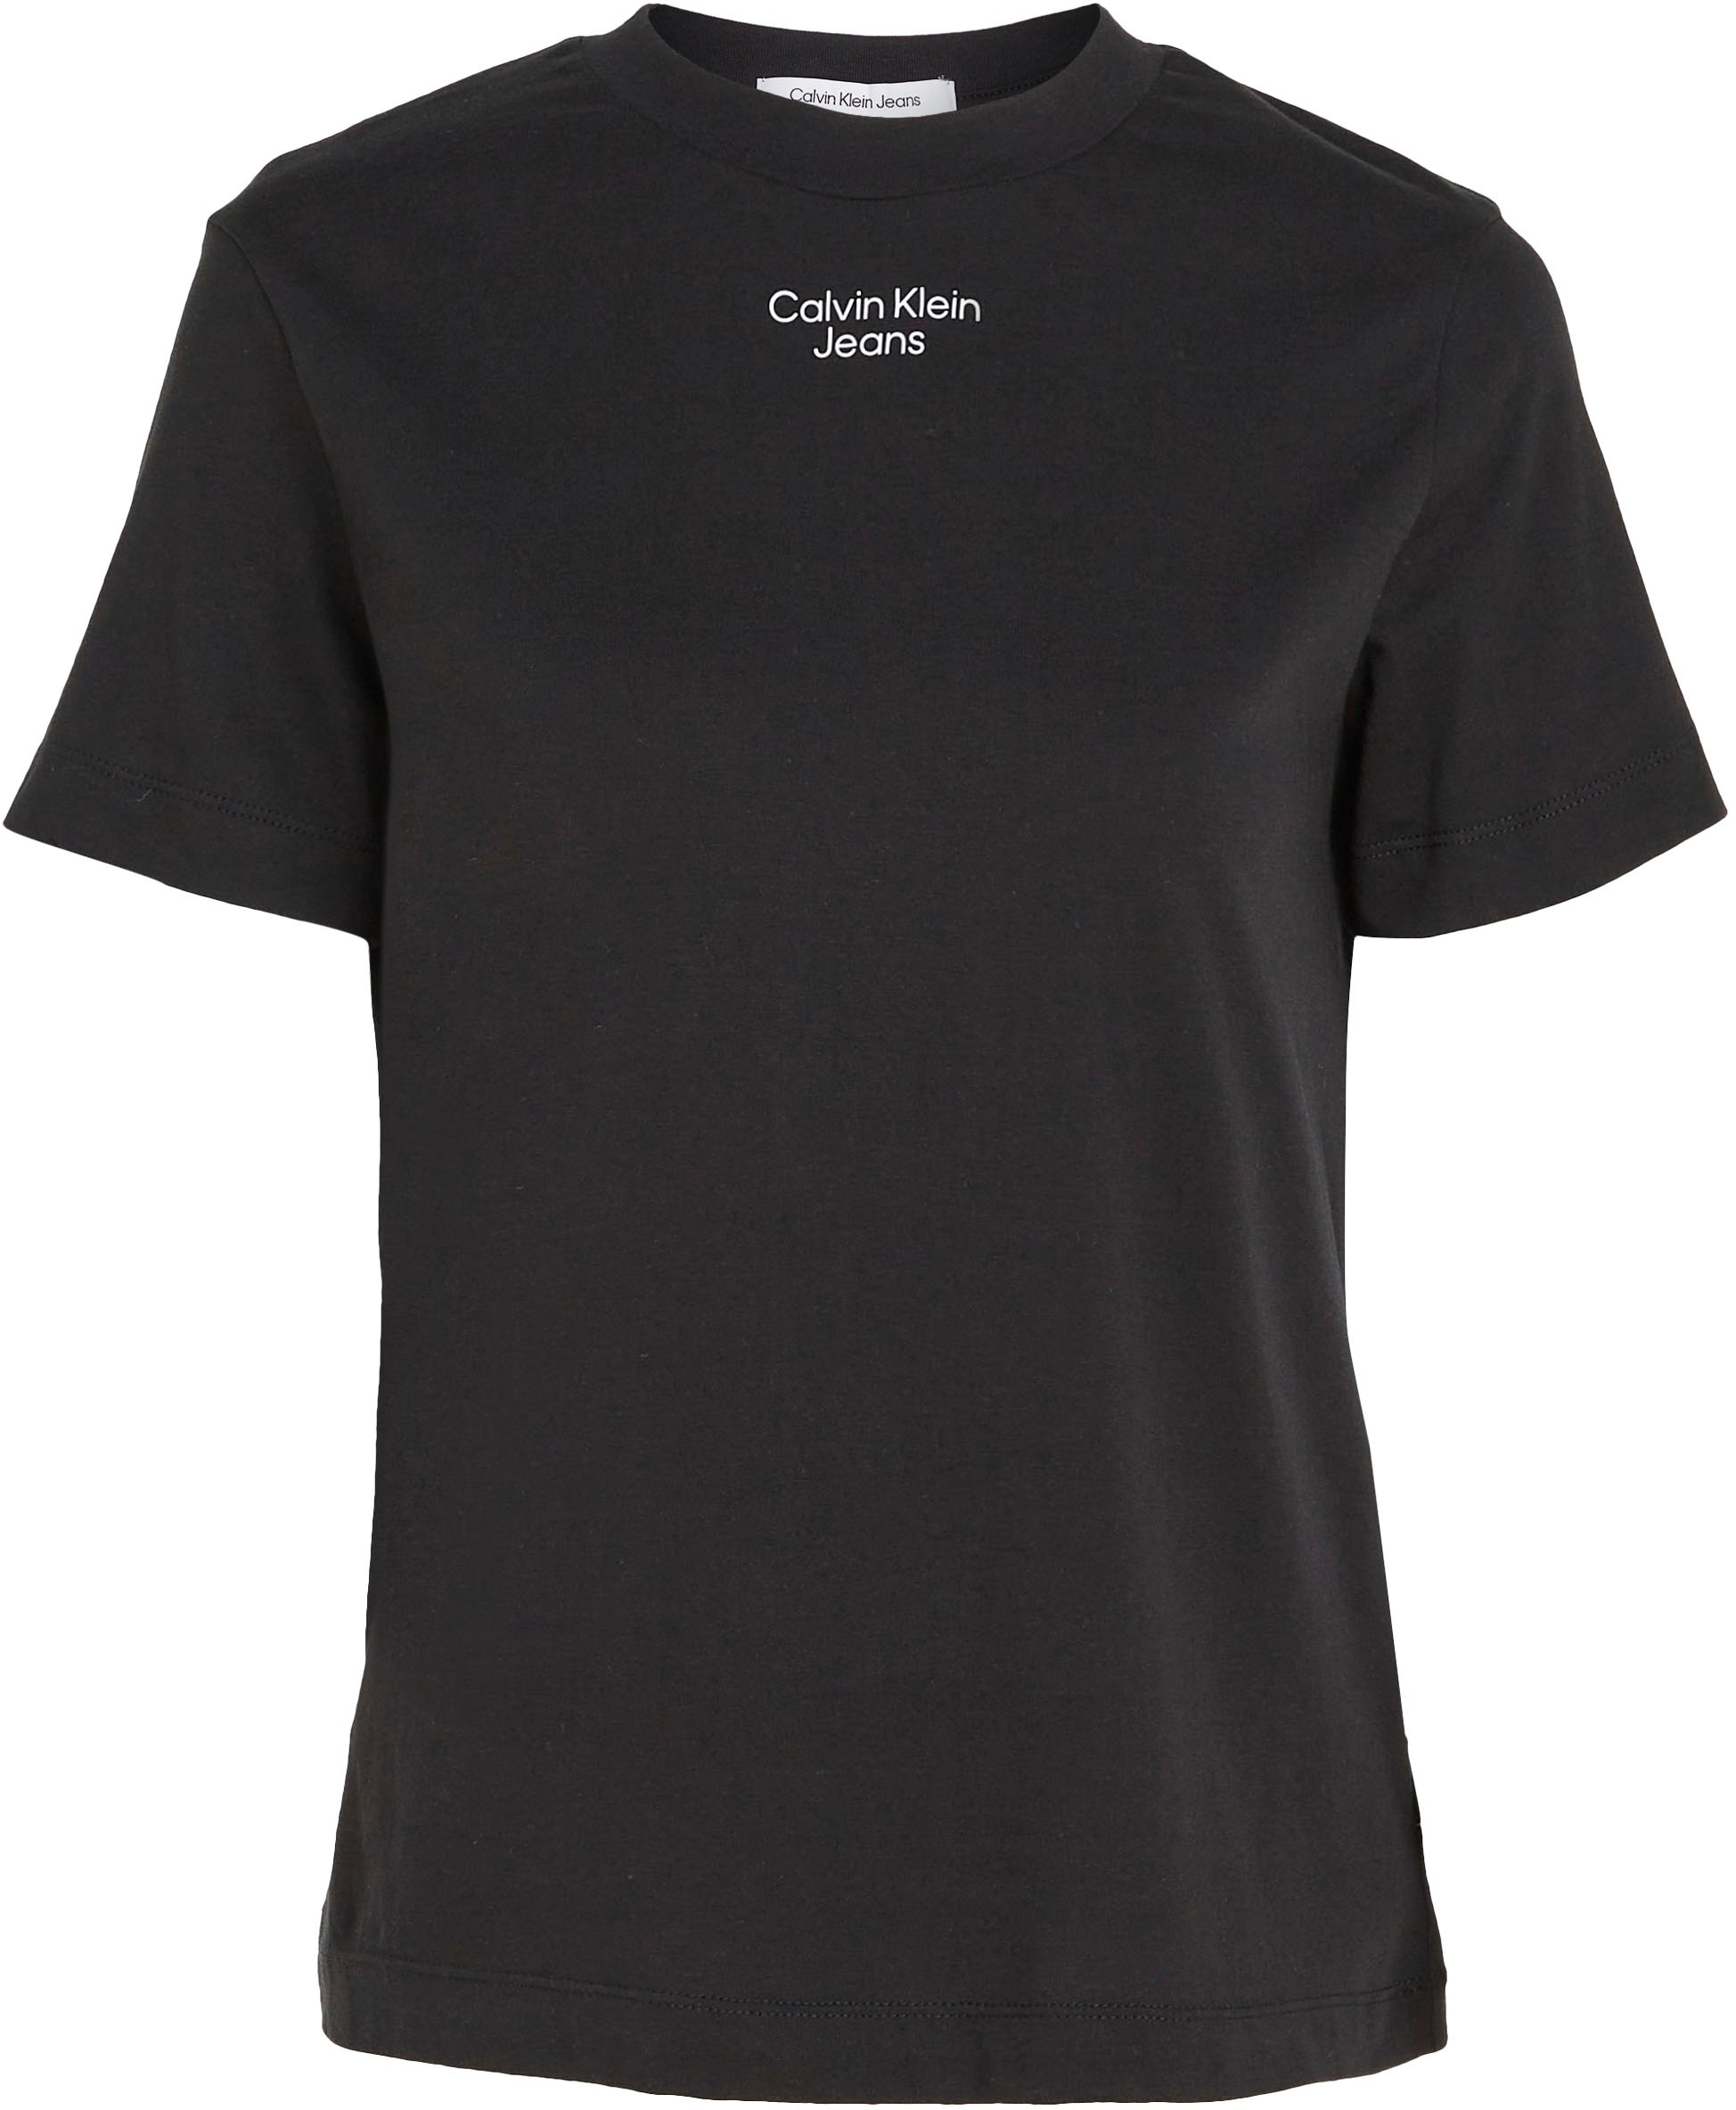 Black Friday Calvin Klein BAUR Jeans T-Shirt dezentem mit »STACKED Jeans STRAIGHT Logodruck Klein TEE«, MODERN | LOGO Calvin